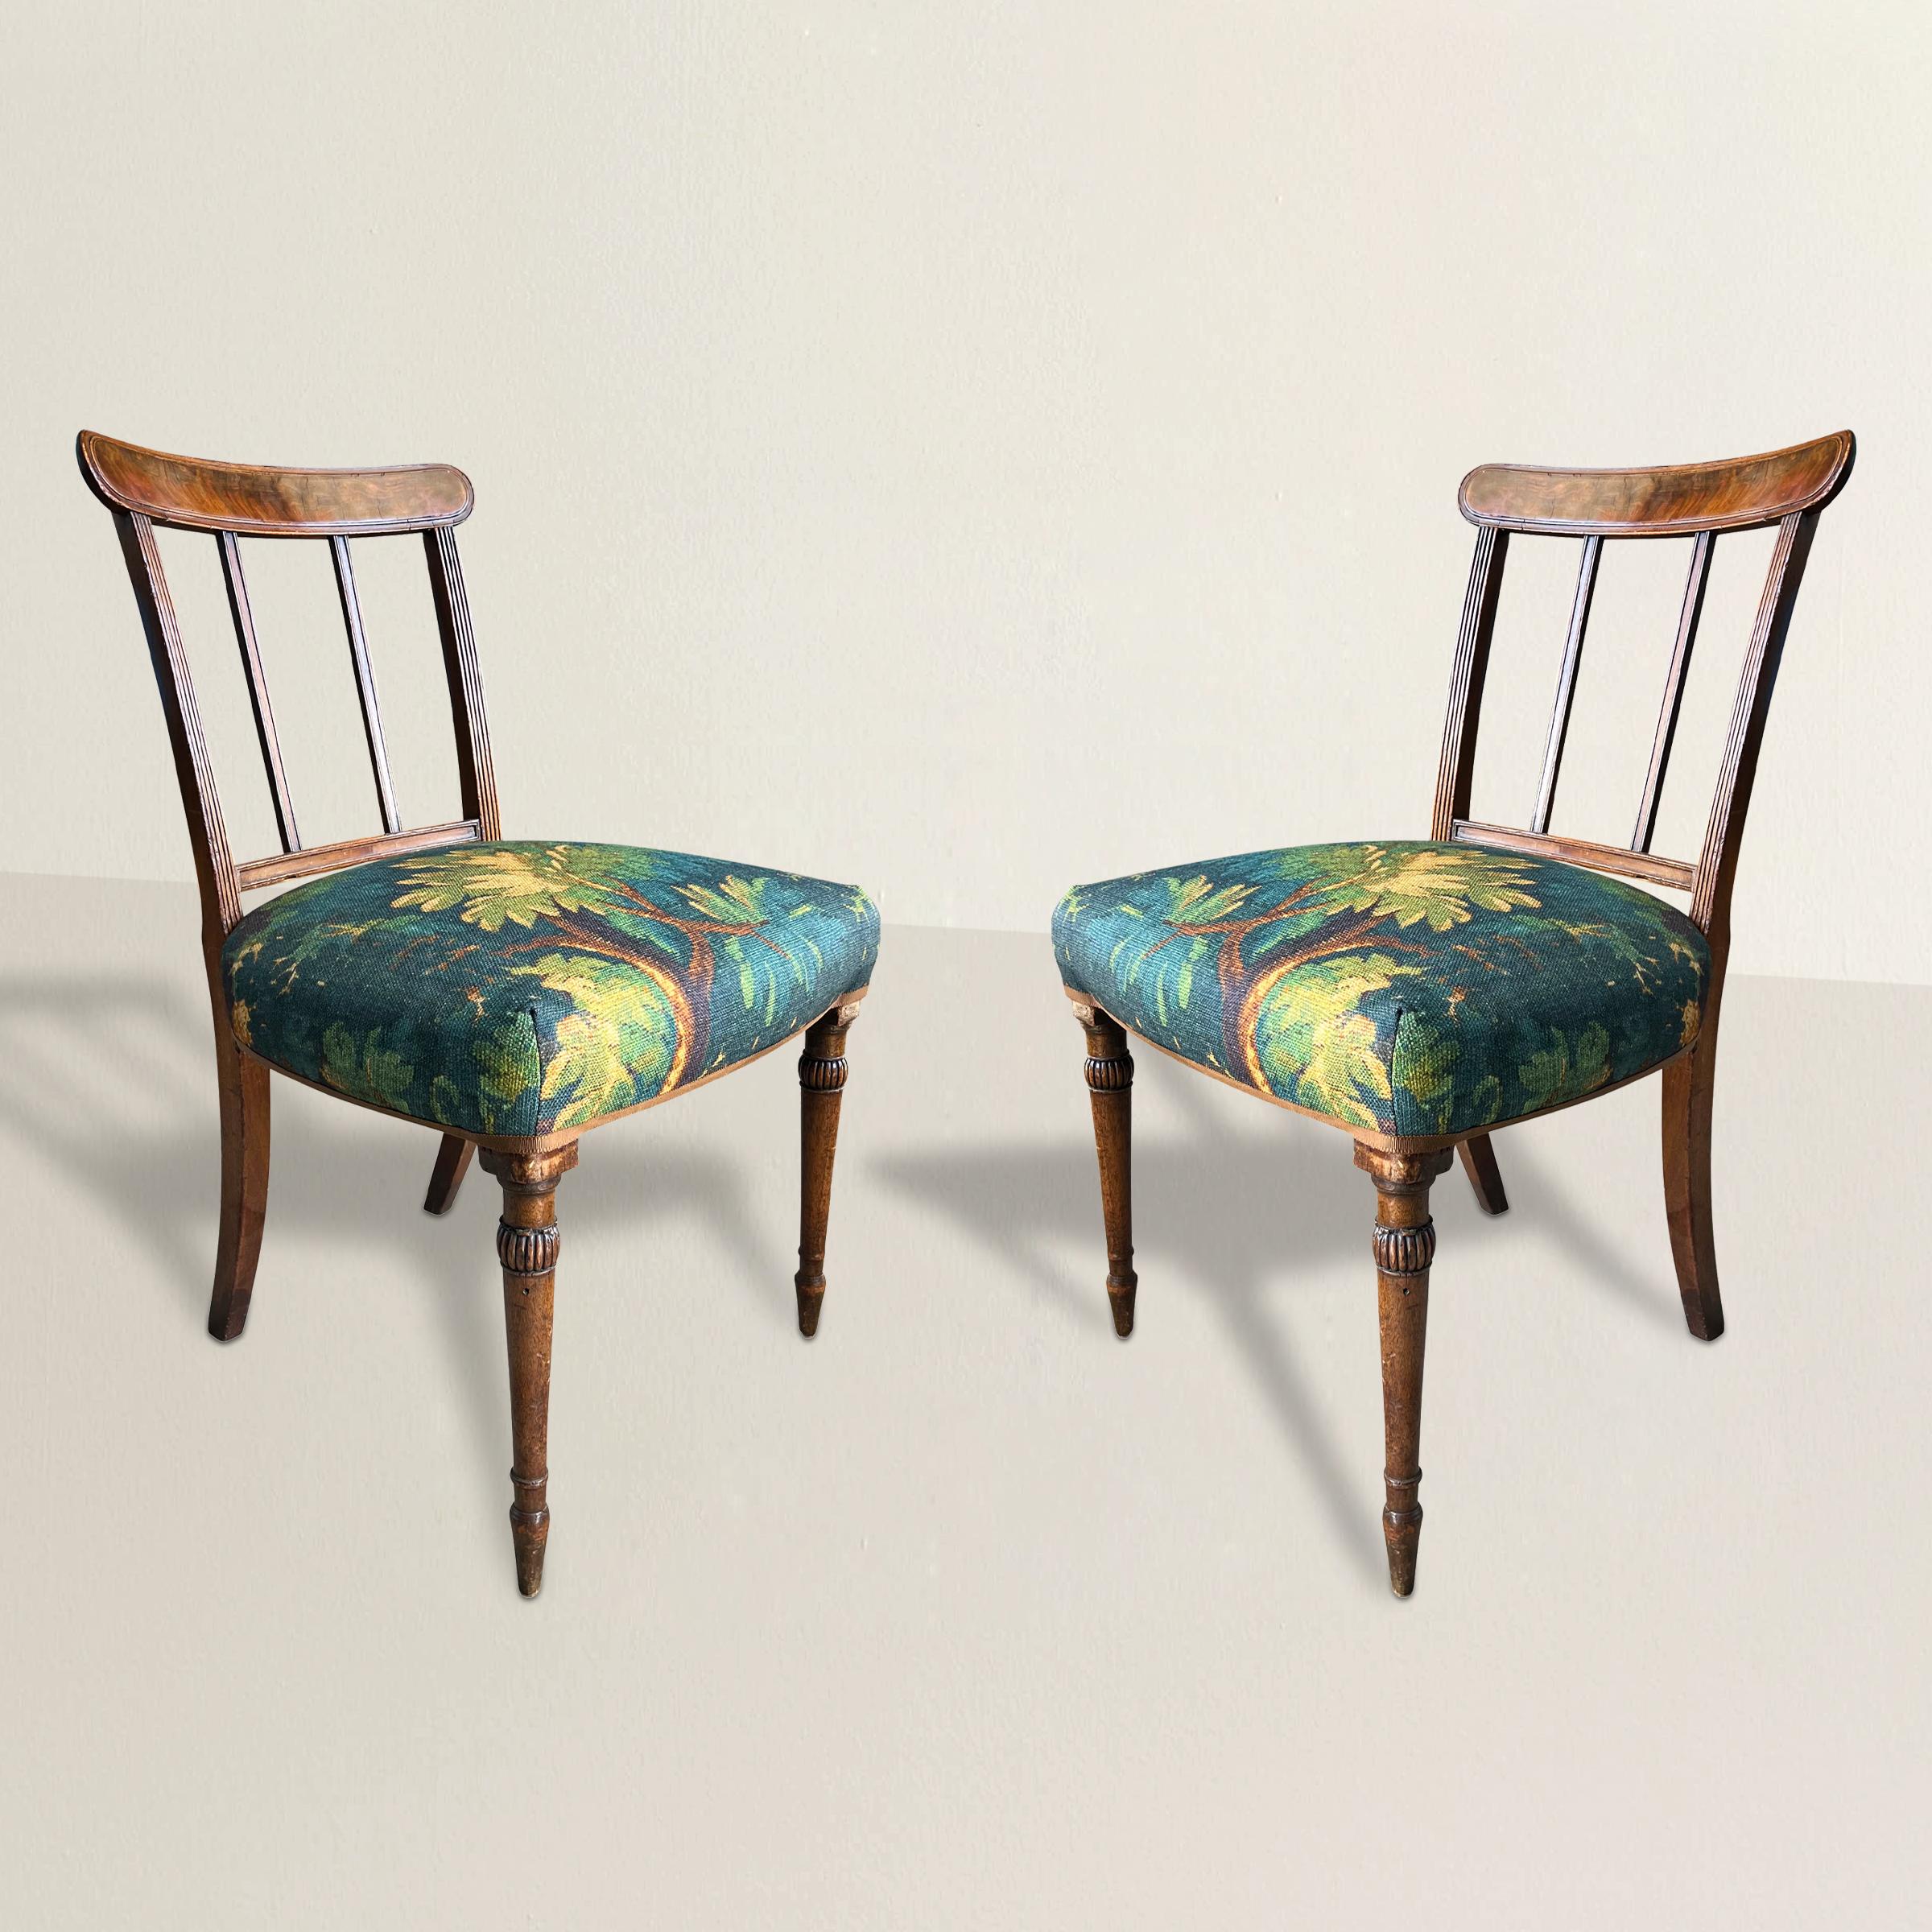 Diese exquisiten englischen Regency-Seitenstühle verkörpern die Eleganz und Raffinesse der Regency-Zeit. Das sorgfältig aus geflammtem Mahagoni gefertigte Holz mit seinen warmen, satten Farbtönen und komplizierten Maserungen bietet eine luxuriöse